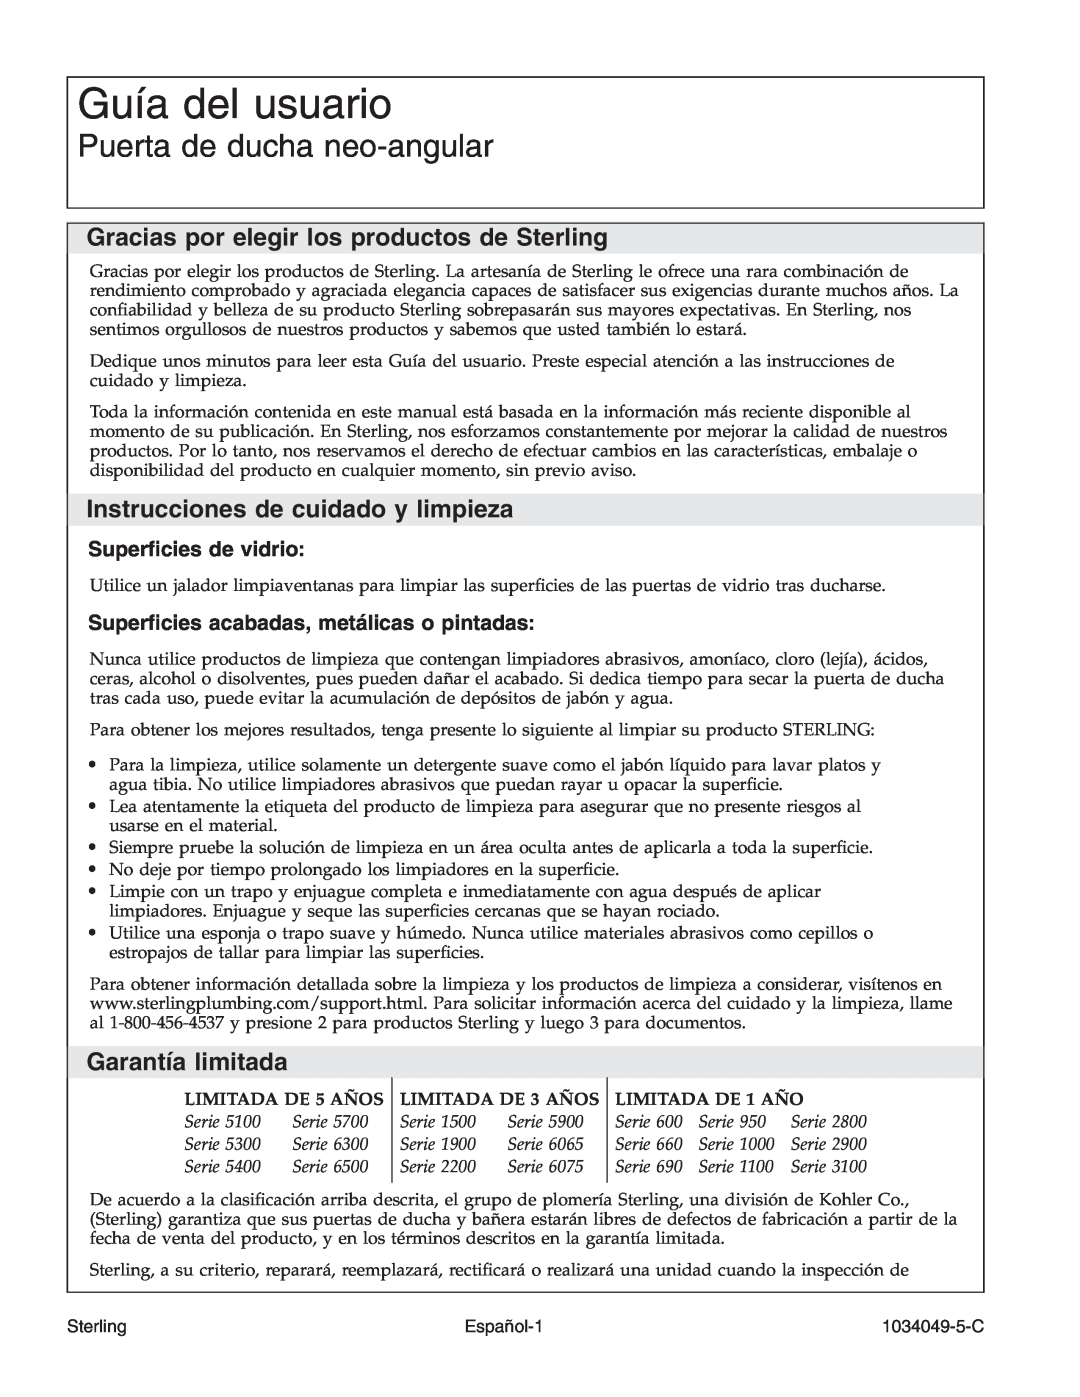 Sterilite SP1900A Guía del usuario, Puerta de ducha neo-angular, Gracias por elegir los productos de Sterling, Español-1 